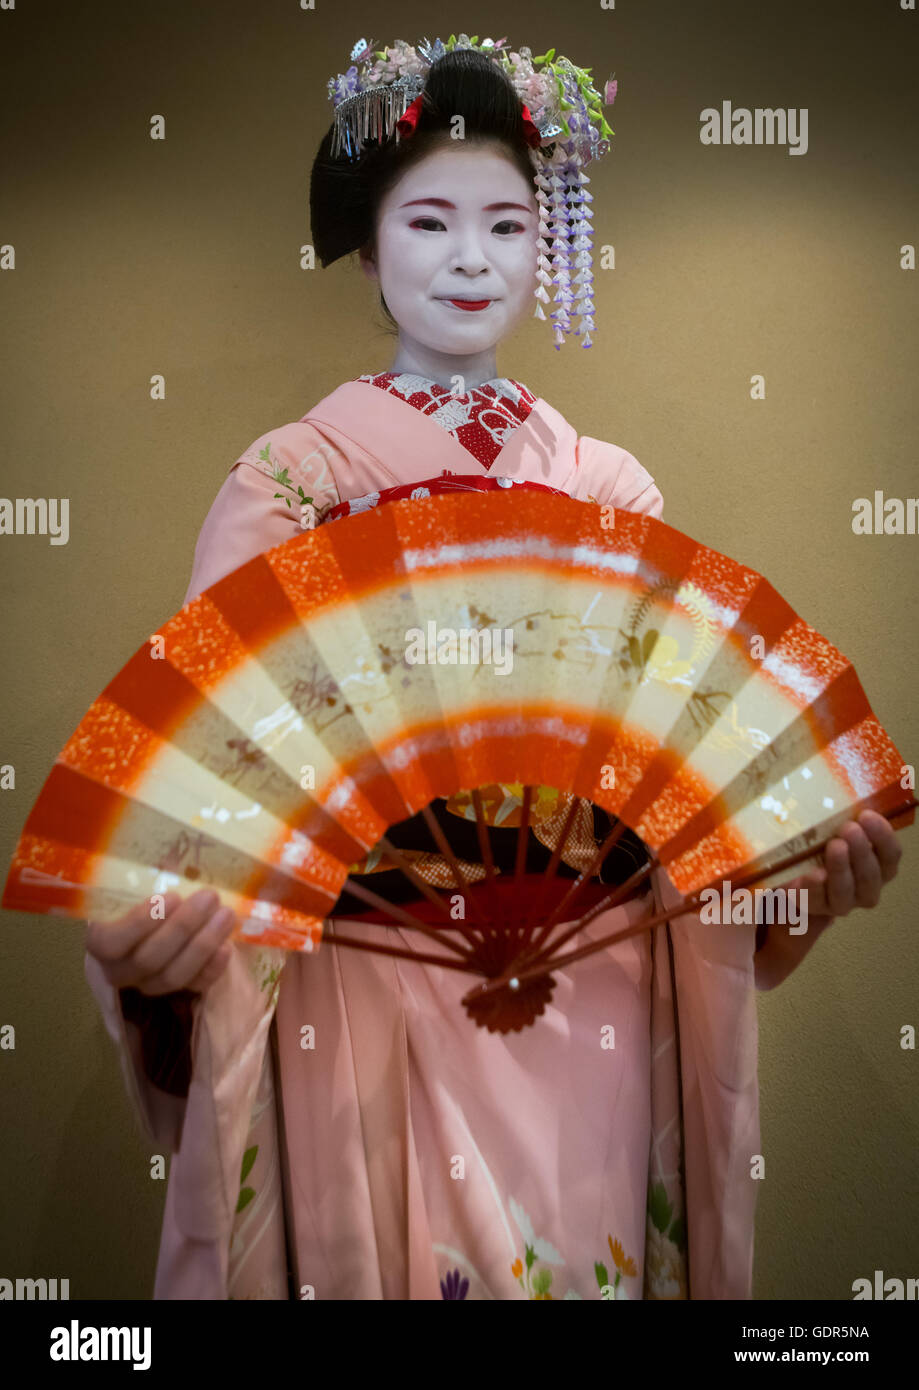 16 anni chiamato maiko chikasaya ballando con un ventilatore, la regione di Kansai, Kyoto, Giappone Foto Stock